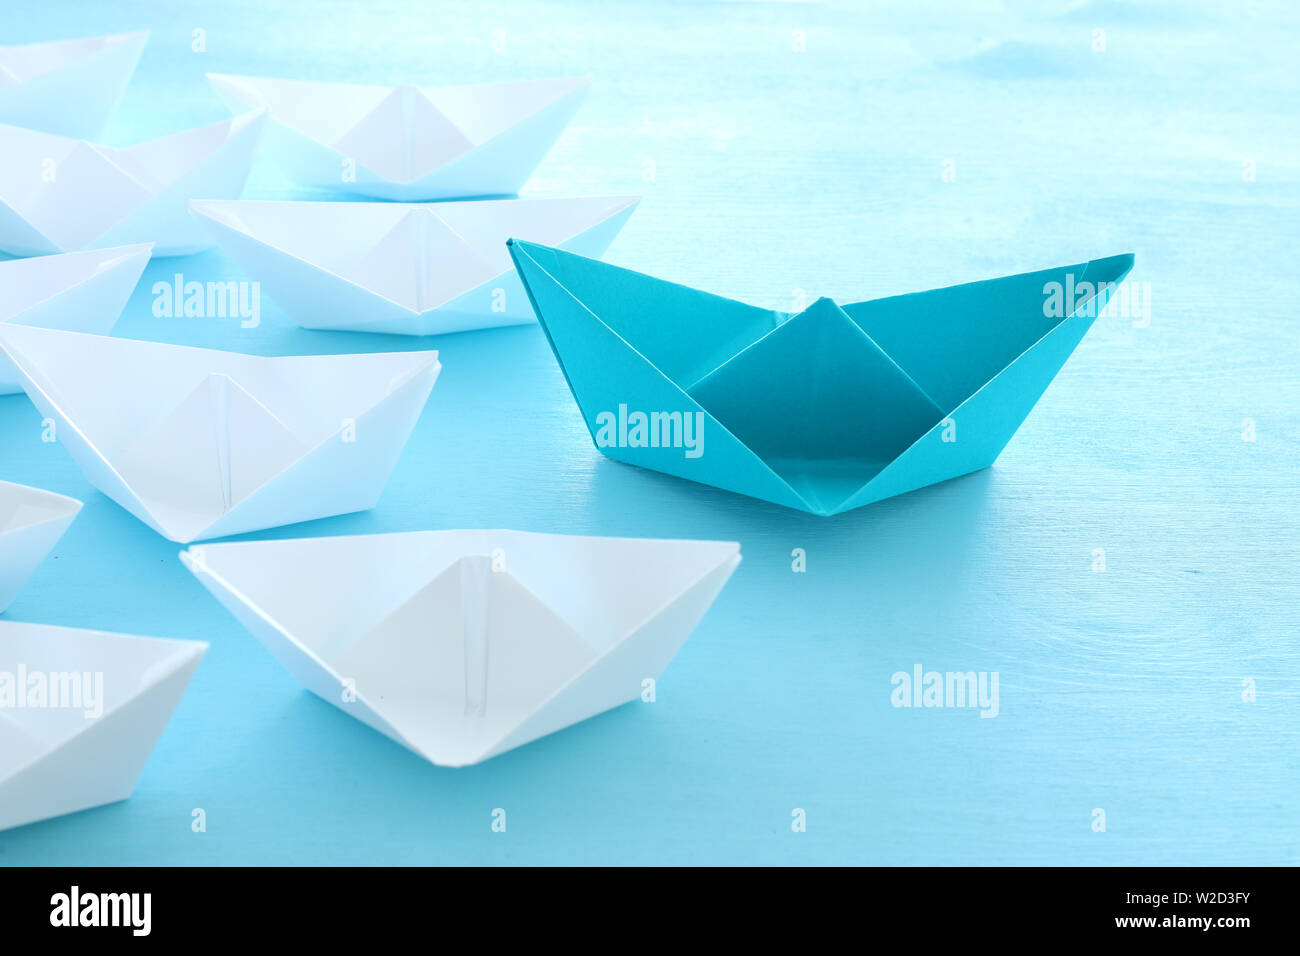 Business. Führung Konzept Bild mit Papier Boote auf Blau Holz- Hintergrund. Ein Führer führen. Stockfoto